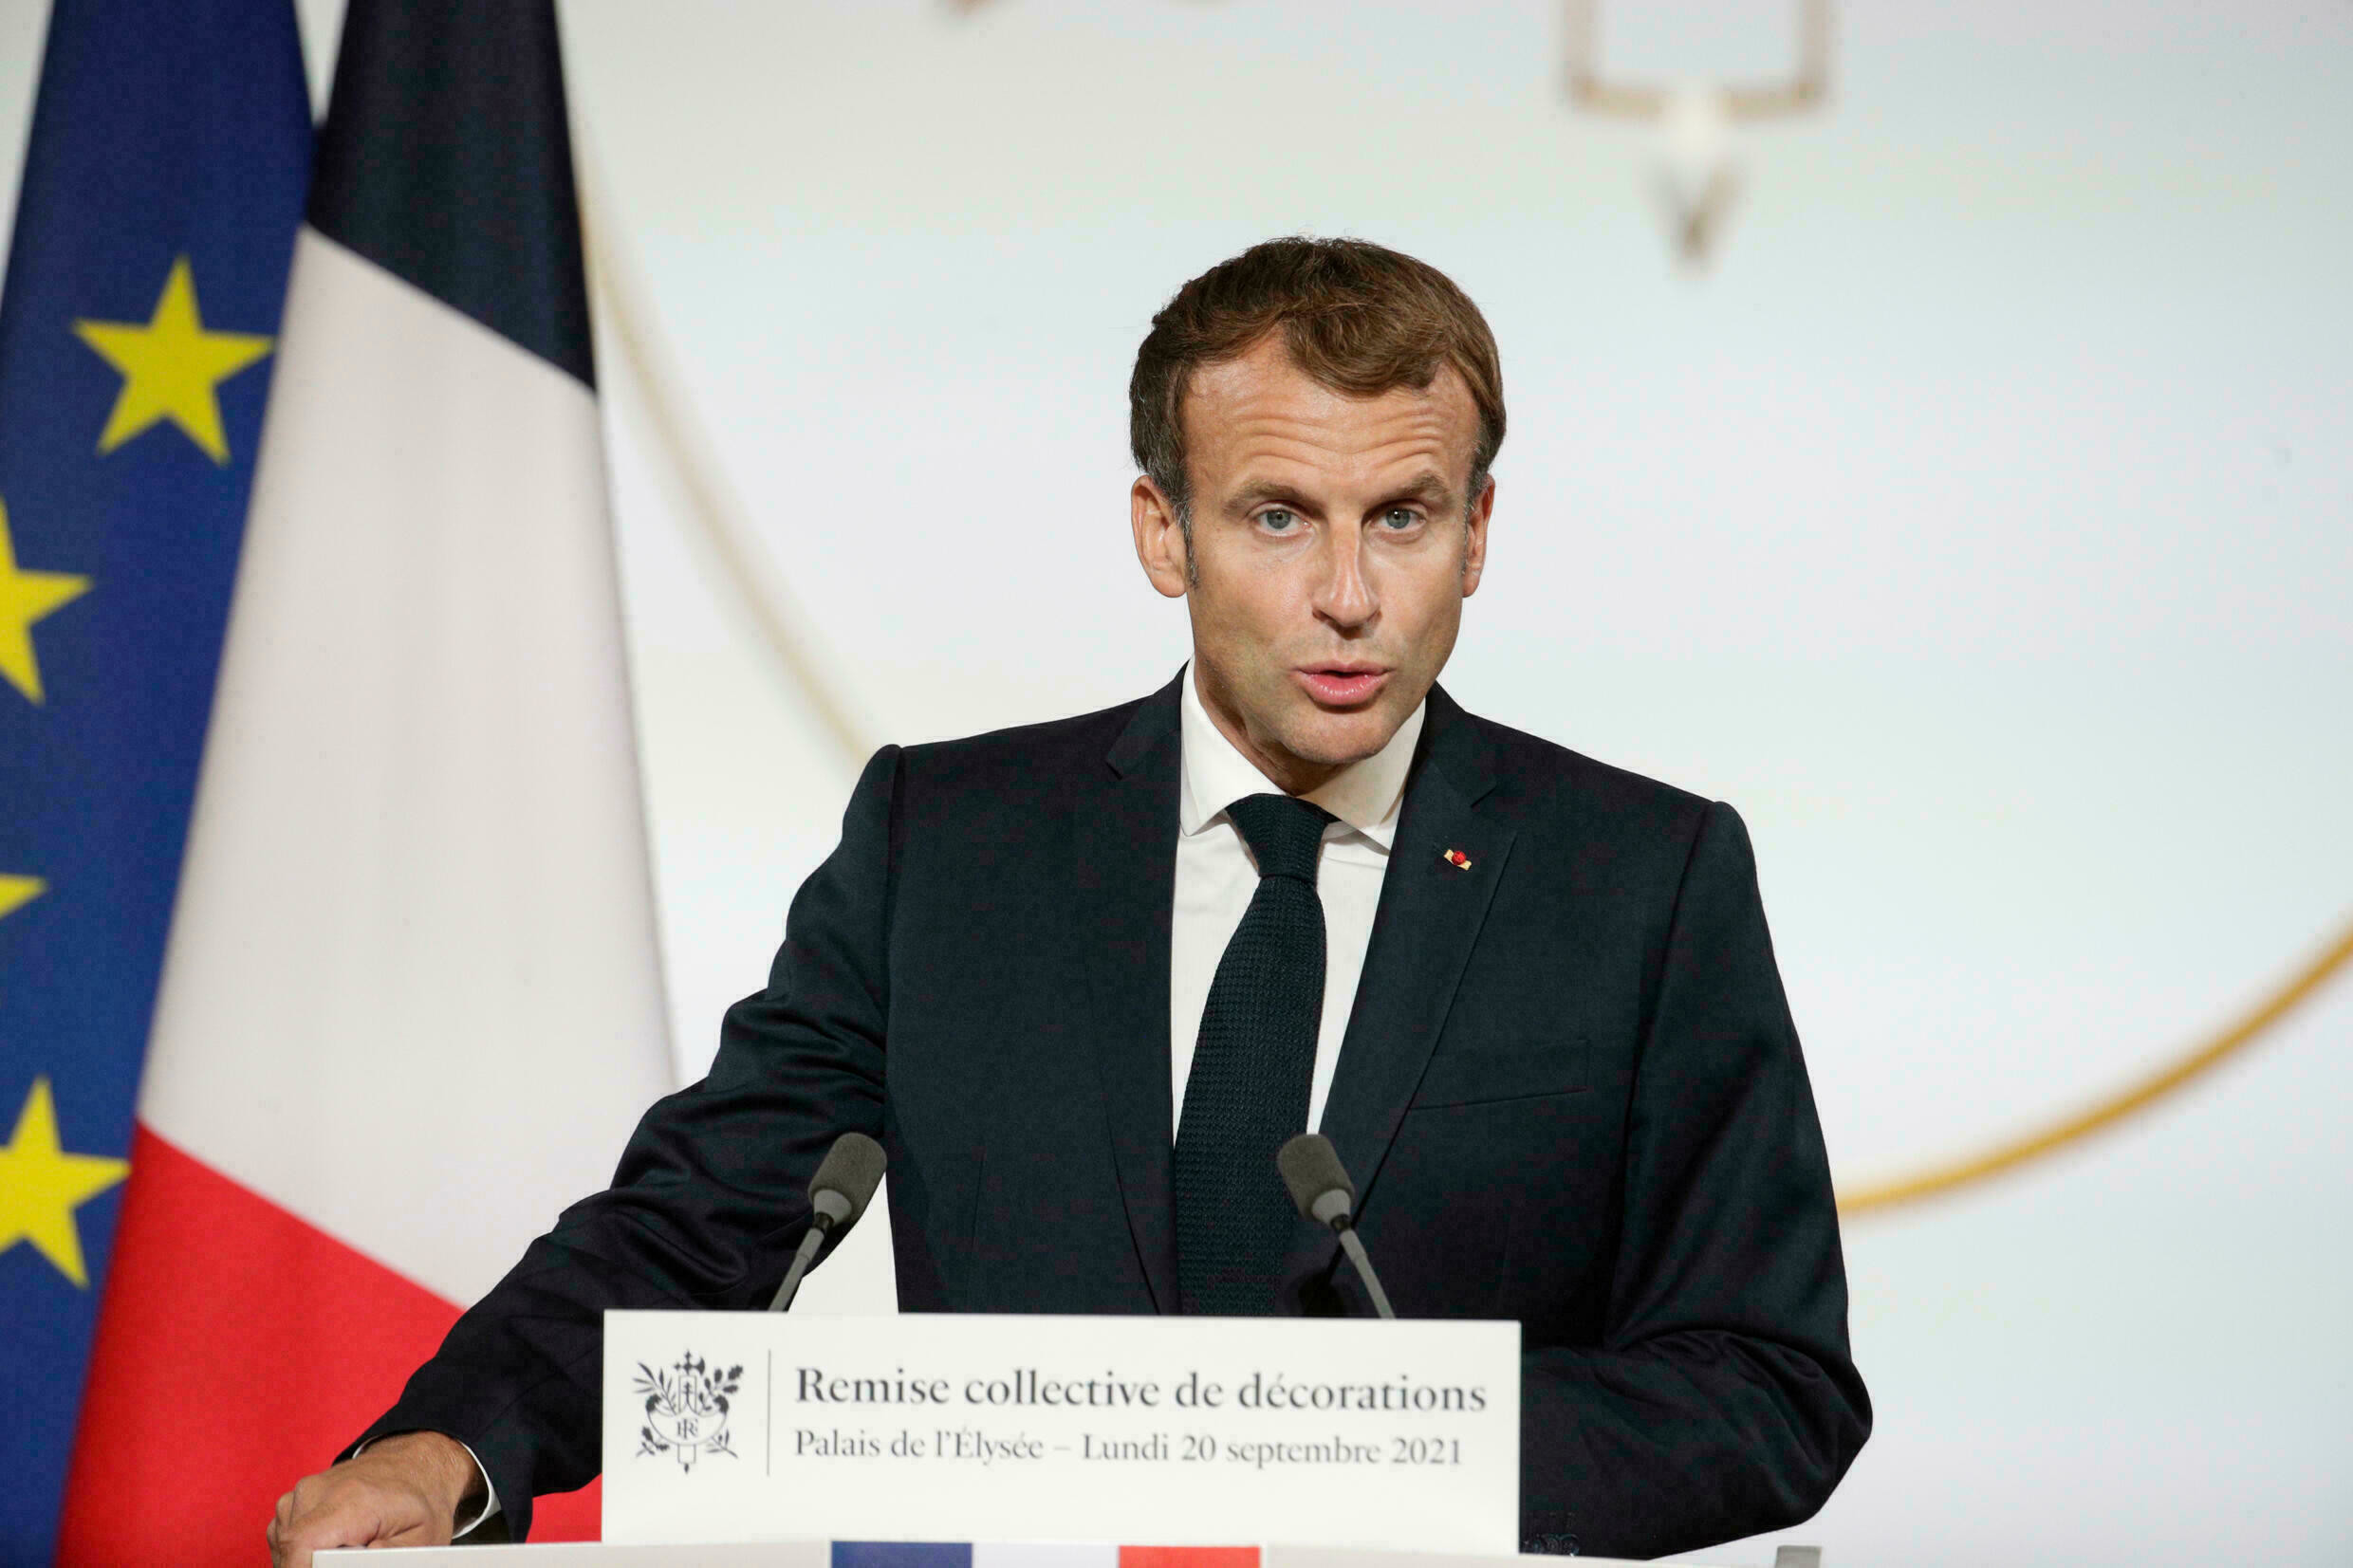 Cri Courageux de l'Algérie Audacieux, Honnête et libre face à Macron de France impérialiste l'oblige à être le 1ier  président français à commémorer le 60e anniversaire du massacre des Algériens à Paris